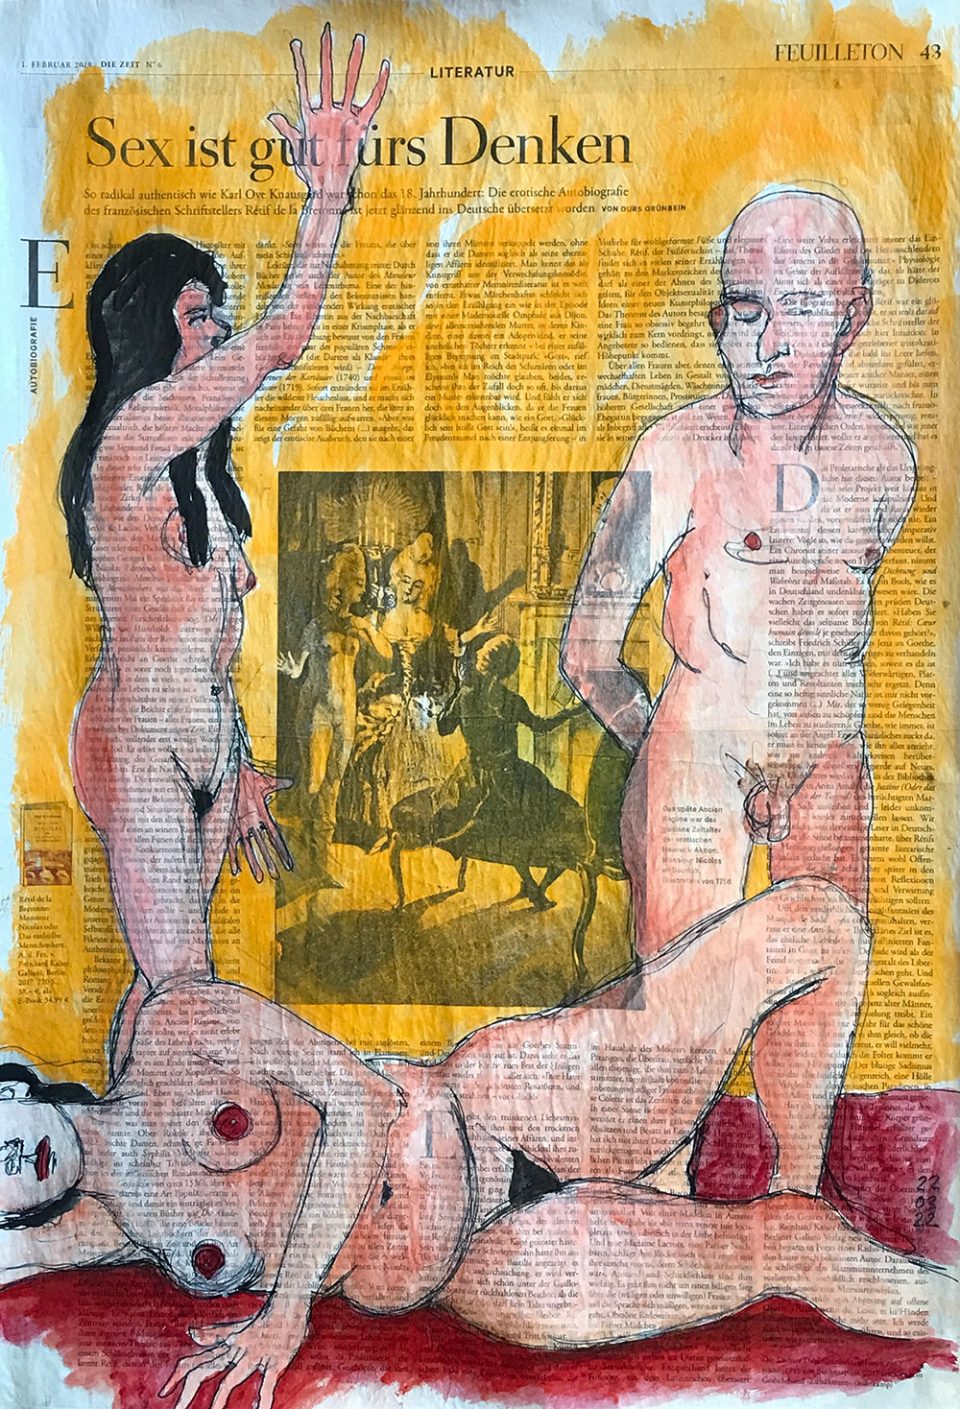 Sex Ist gut fürs Denken – Illustration auf ganzer Zeitungsseite 56 x 40 cm